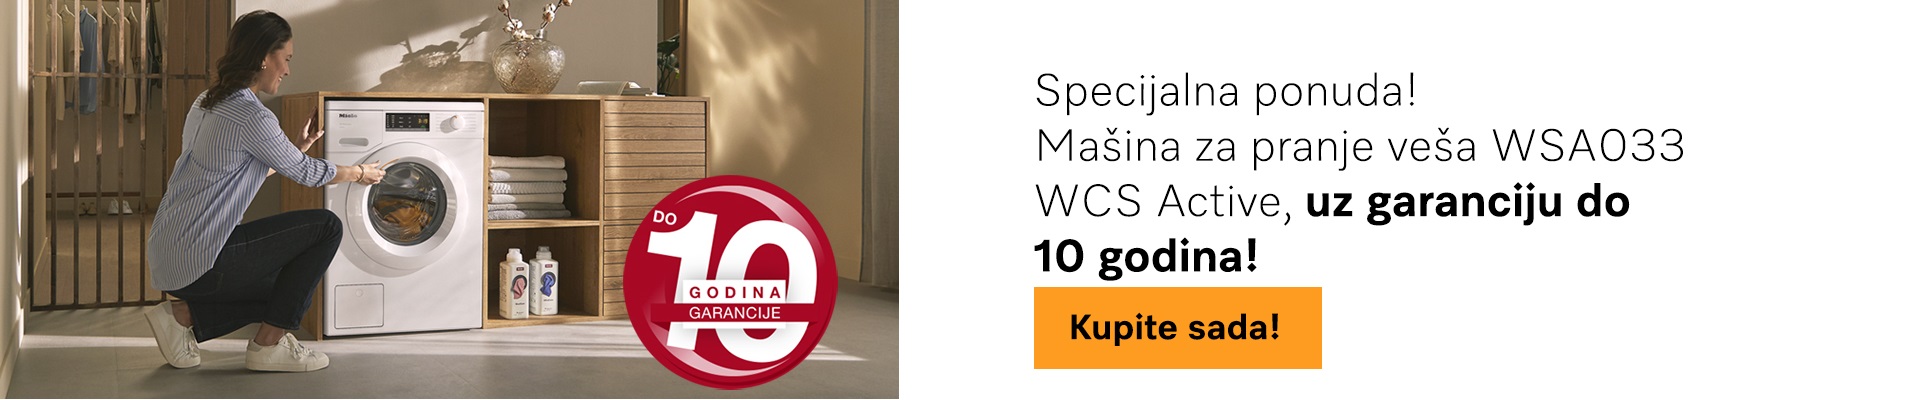 Specijalna ponuda Miele mašine za pranje veša WSA033 WCS Active – 2+8 godina bezbrižnosti!